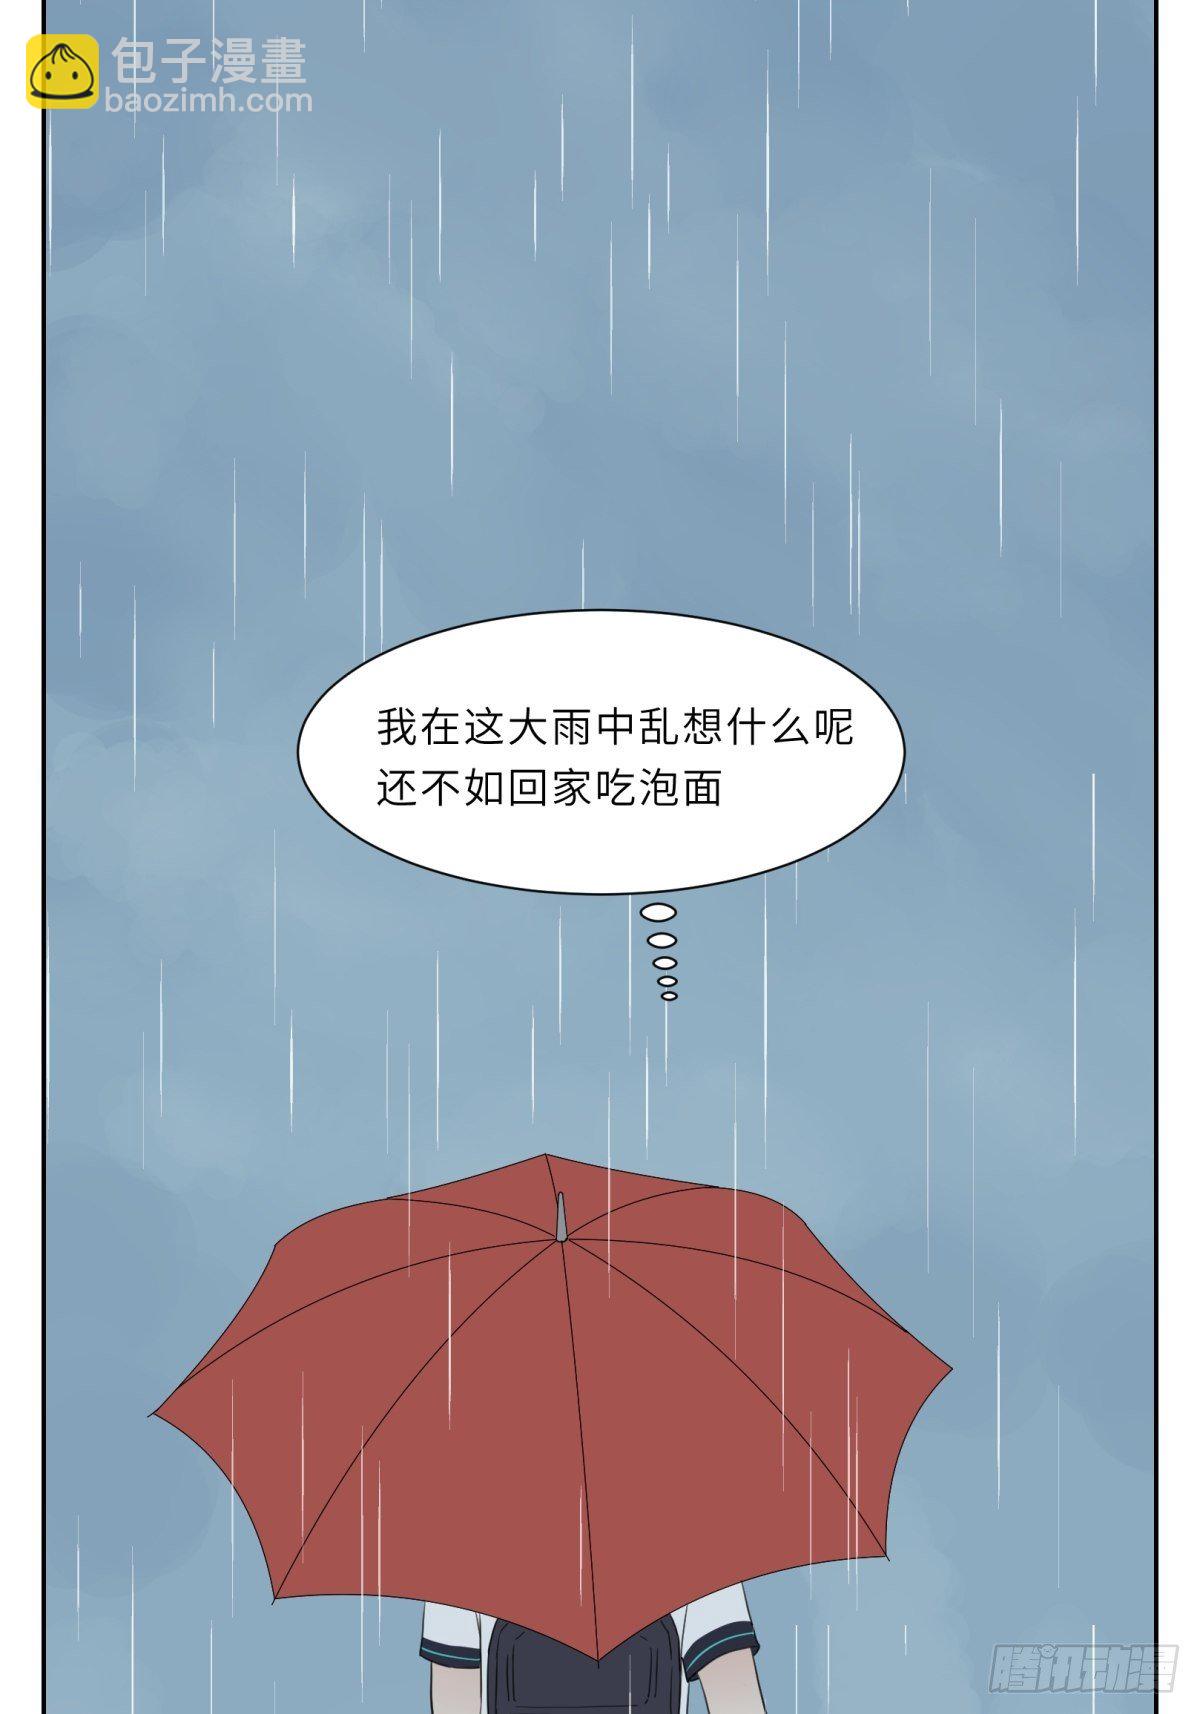 撩花 - 雨中思绪 - 2